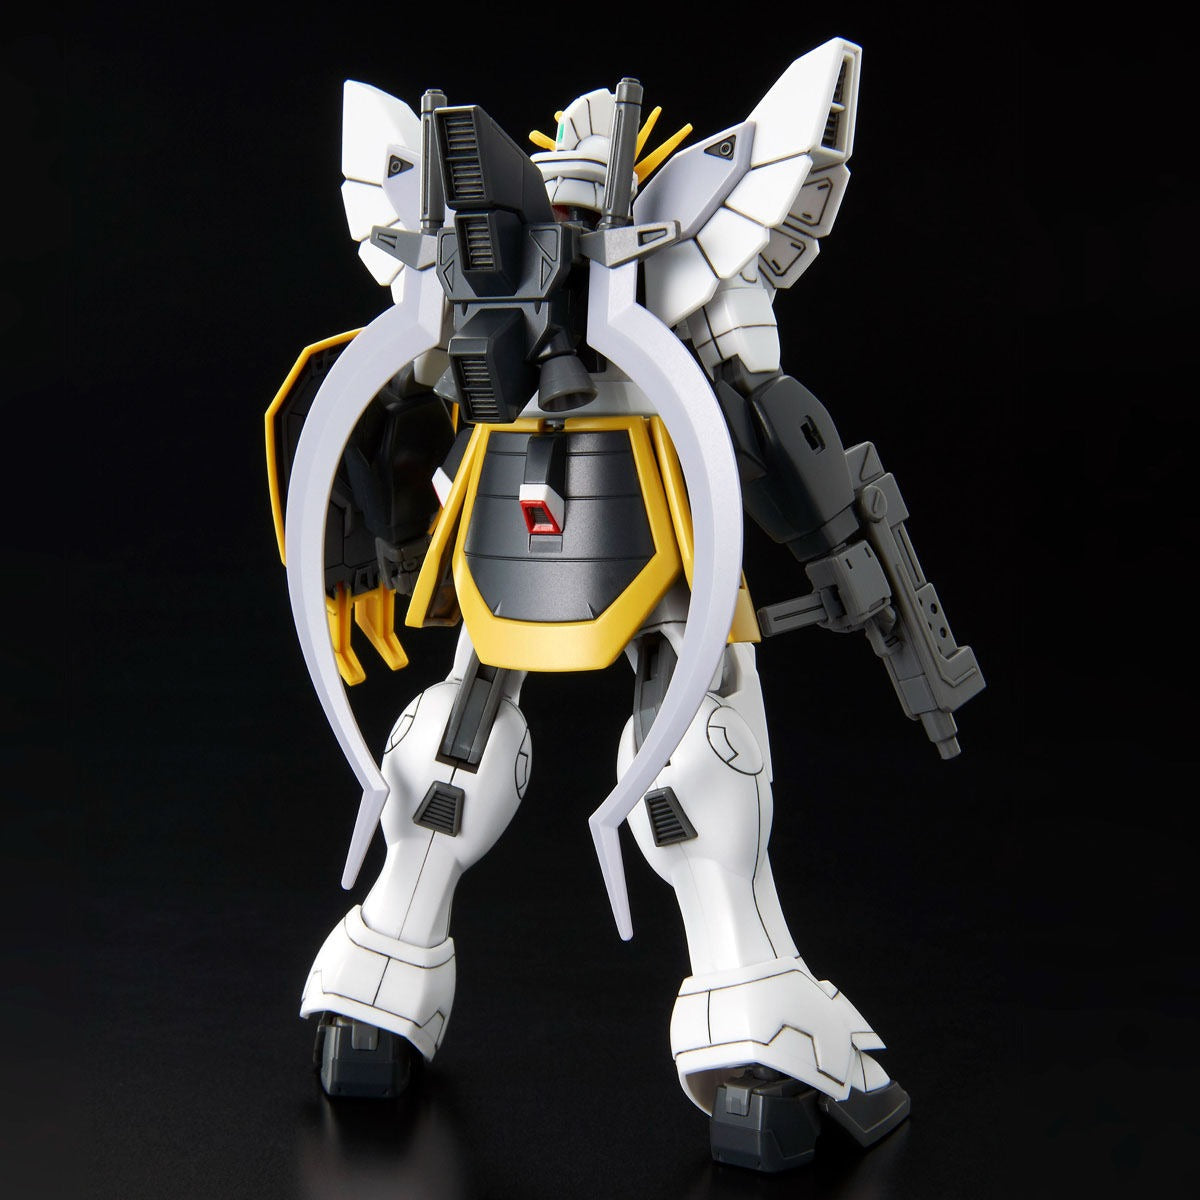 Gundam 1/144 HGUC XXXG-01SR2 Gundam Sandrock Custom Kai HGACModel Kit Exclusive